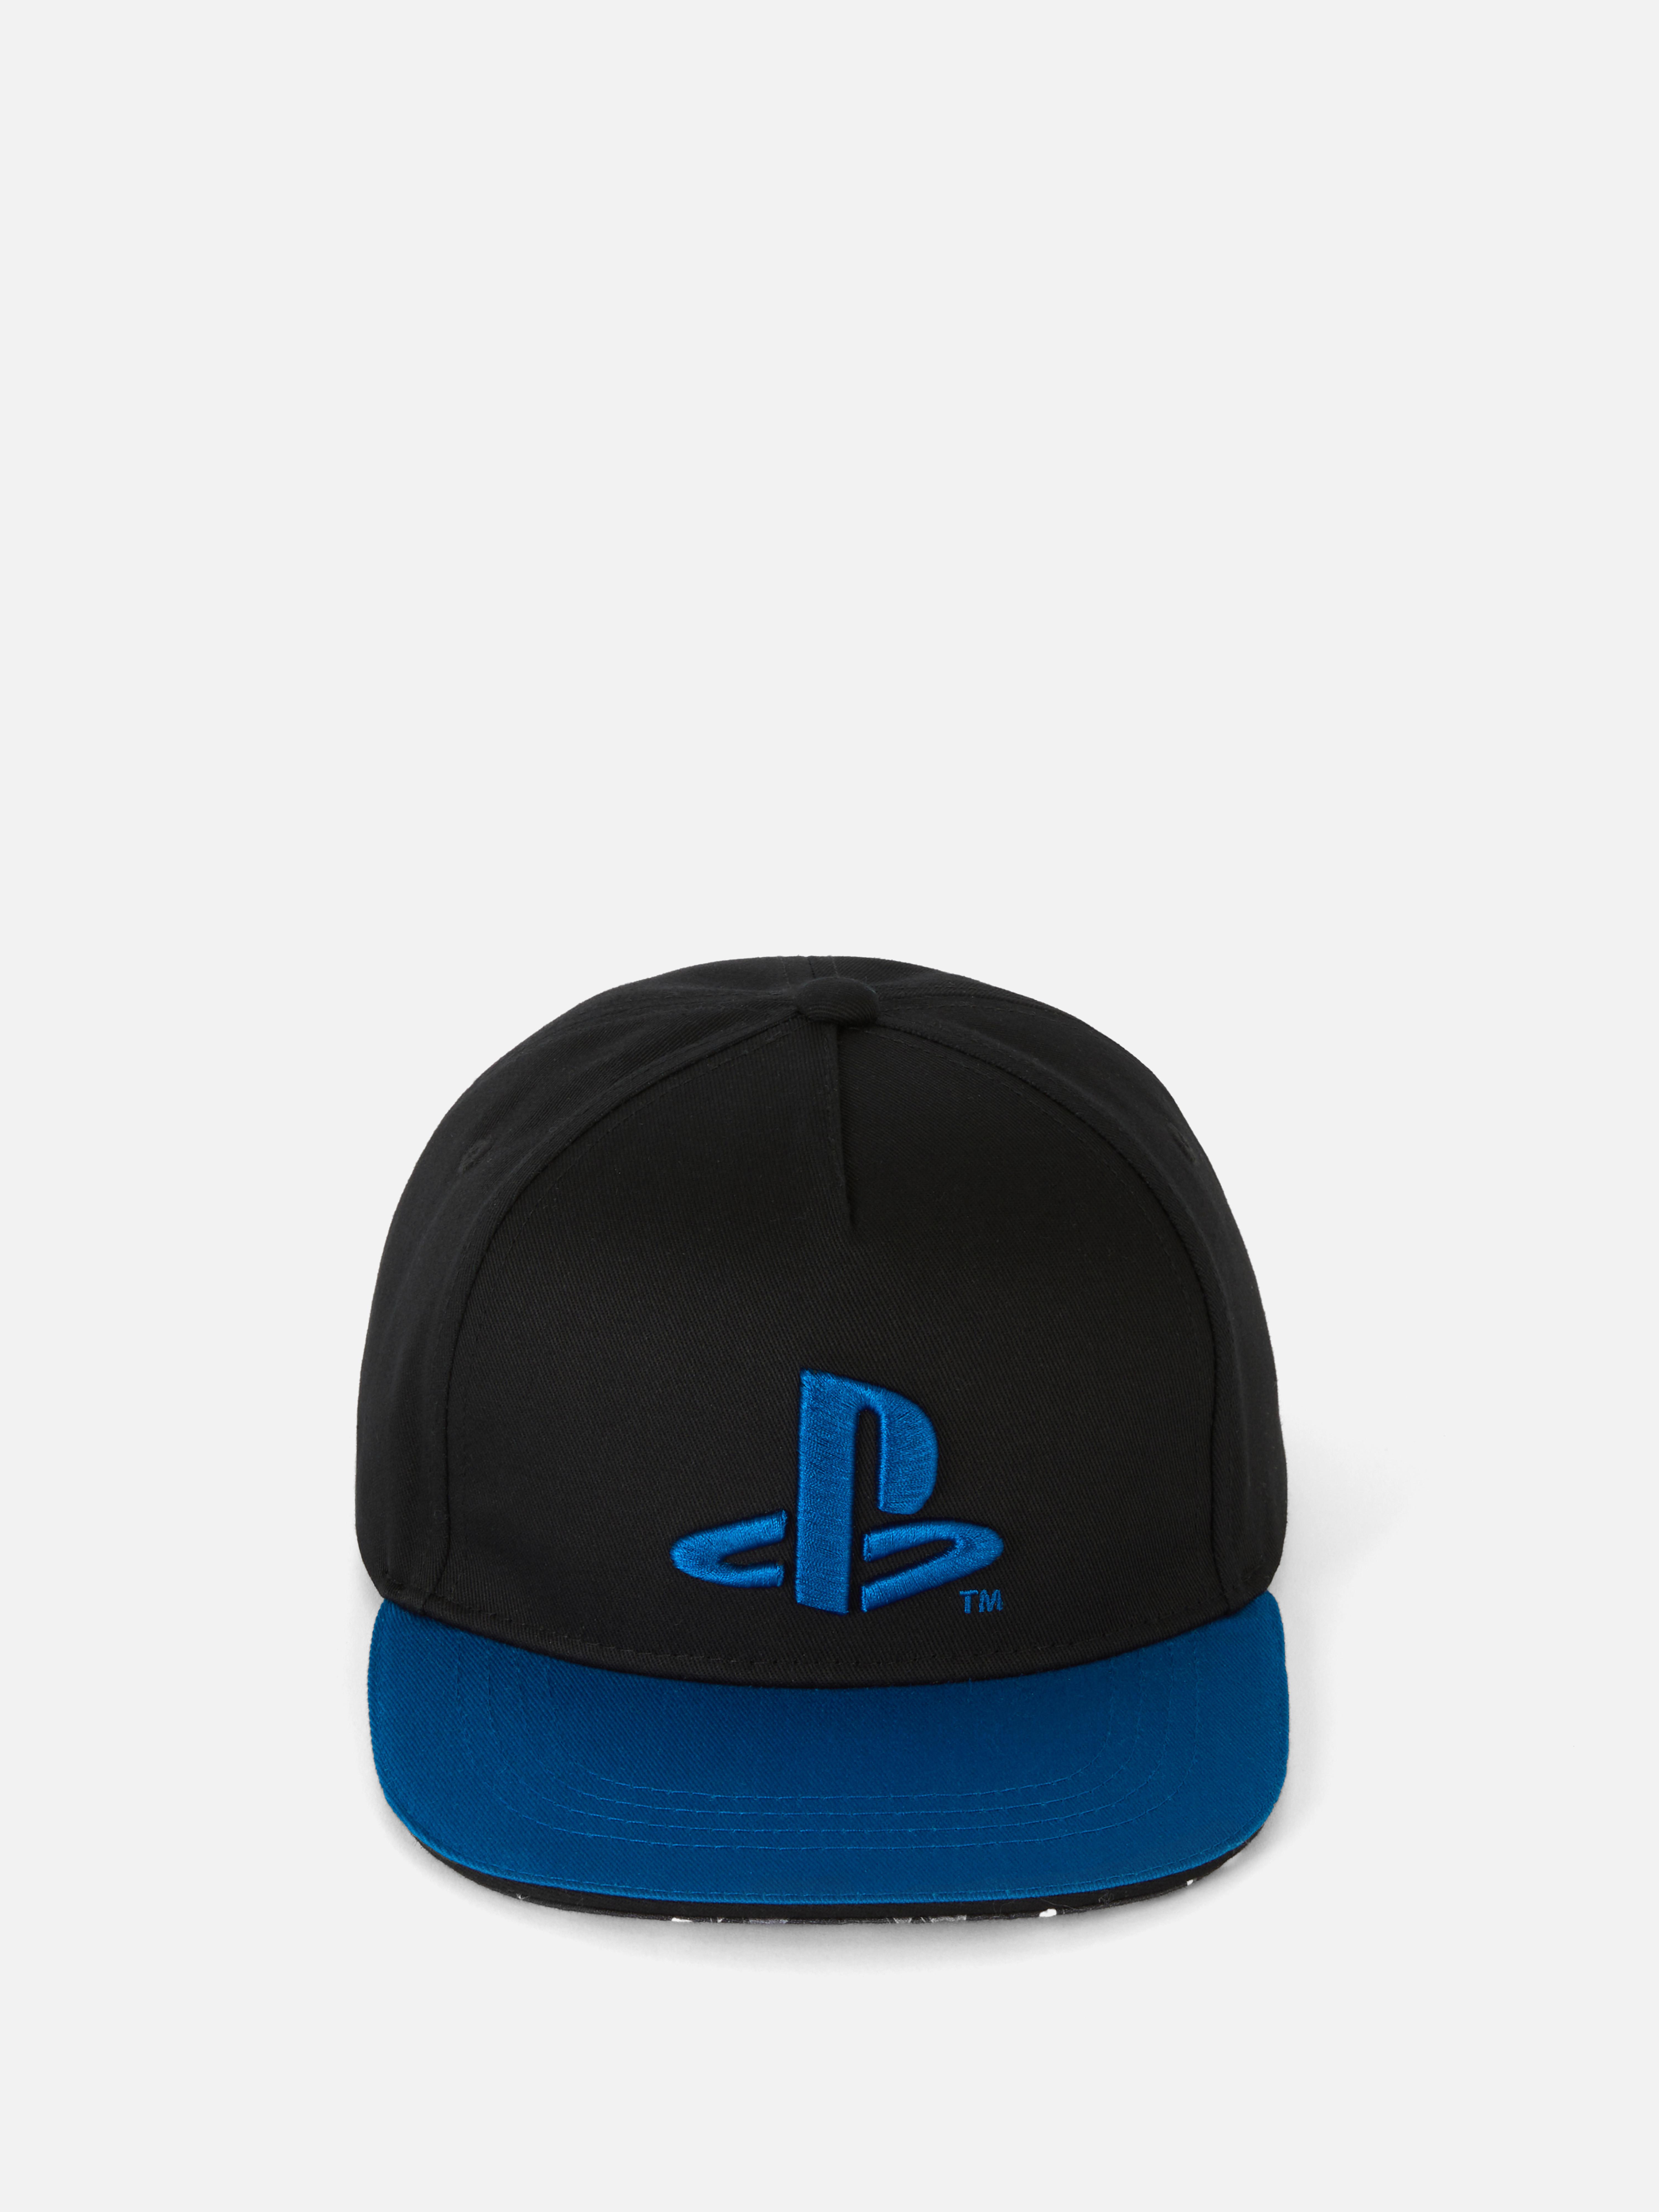 Sony PlayStation Cap